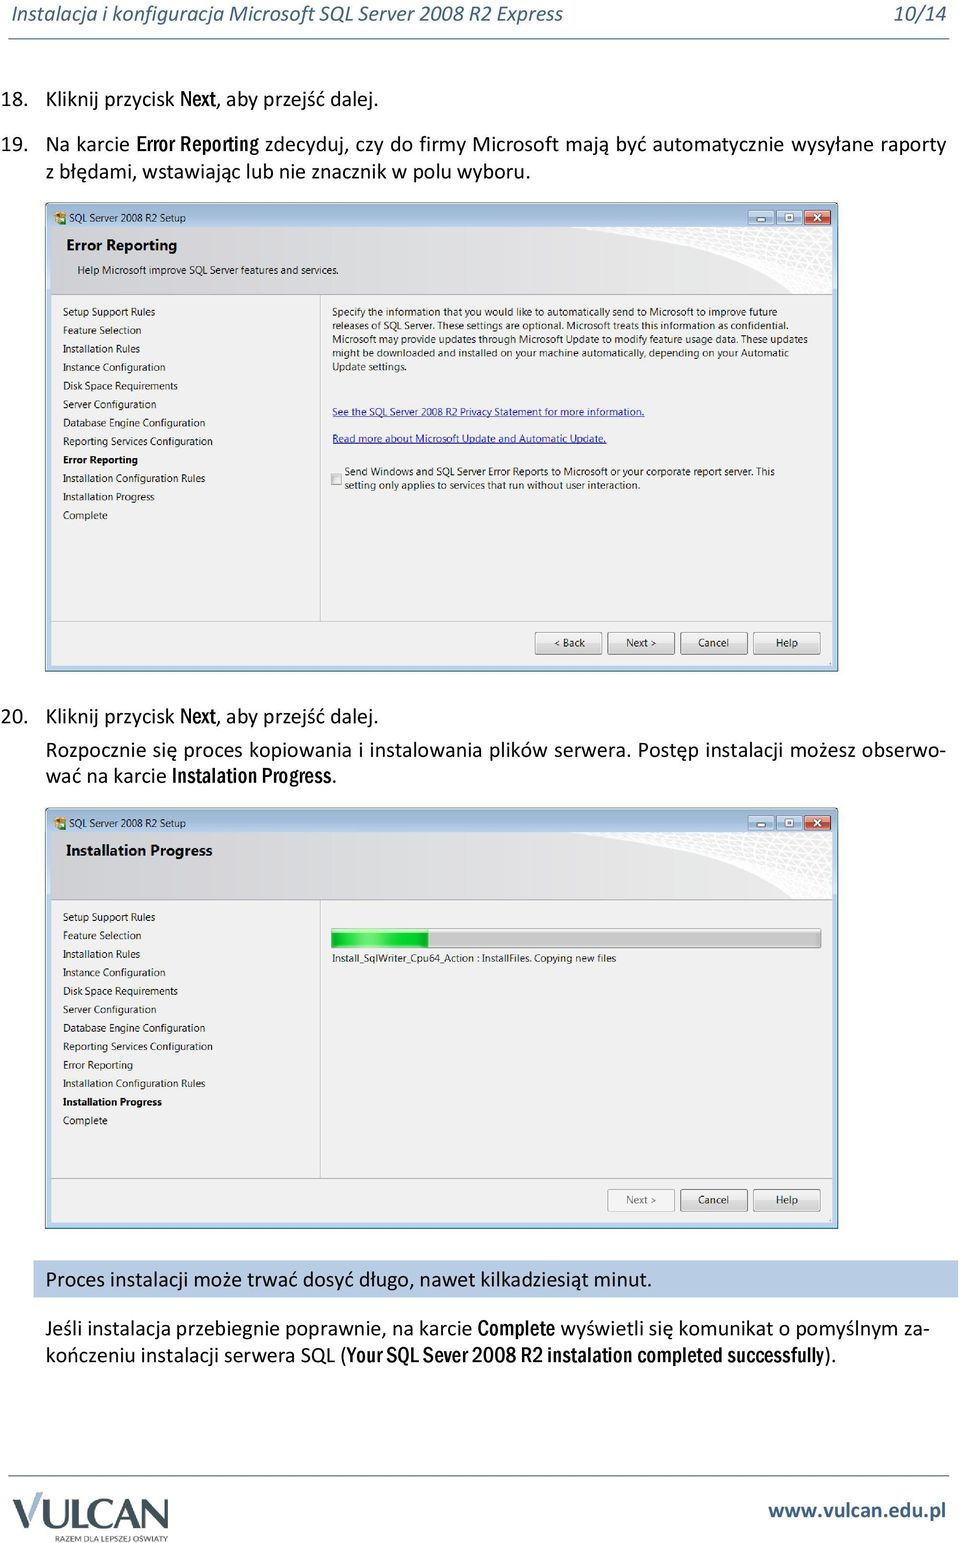 Kliknij przycisk Next, aby przejść dalej. Rozpocznie się proces kopiowania i instalowania plików serwera. Postęp instalacji możesz obserwować na karcie Instalation Progress.